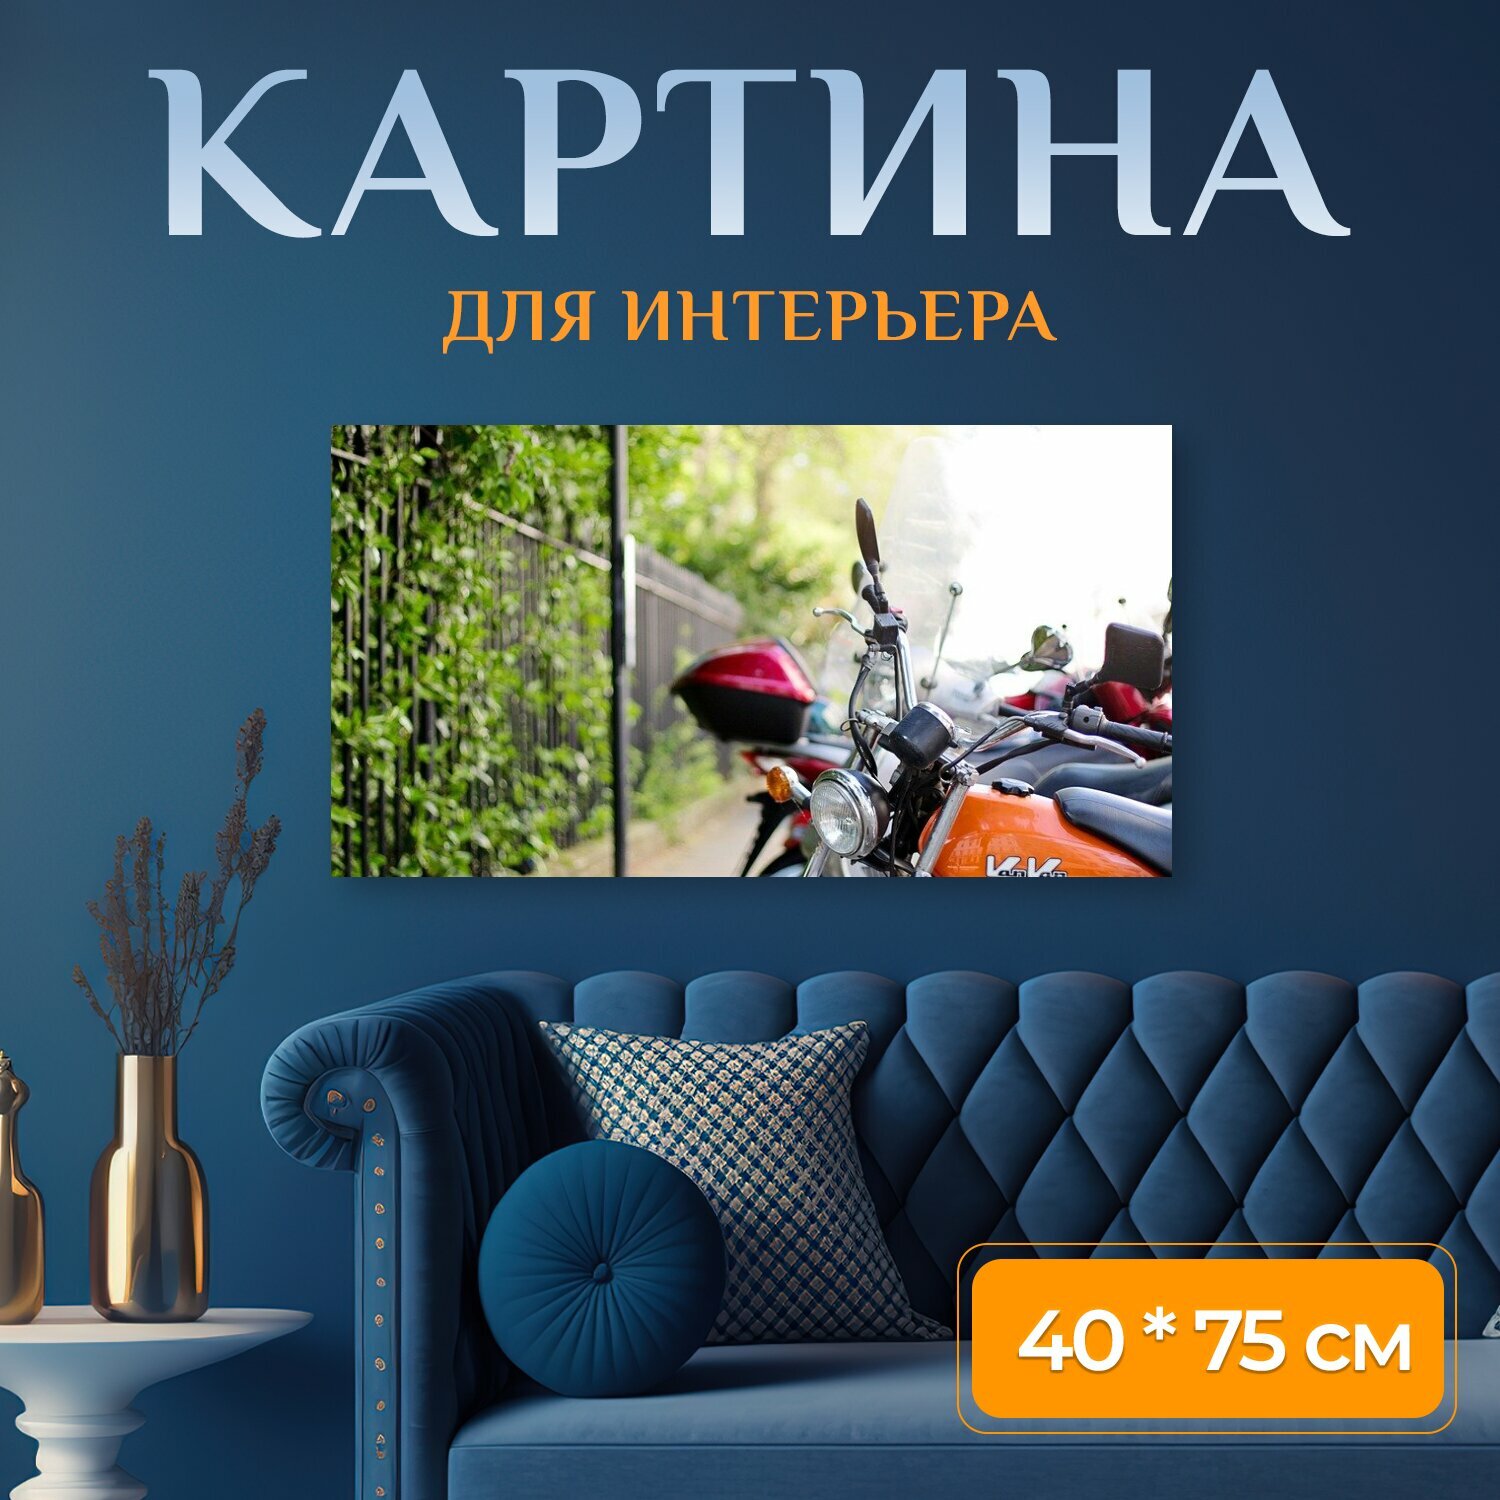 Картина на холсте "Мотоцикл, транспортное средство, велосипед" на подрамнике 75х40 см. для интерьера